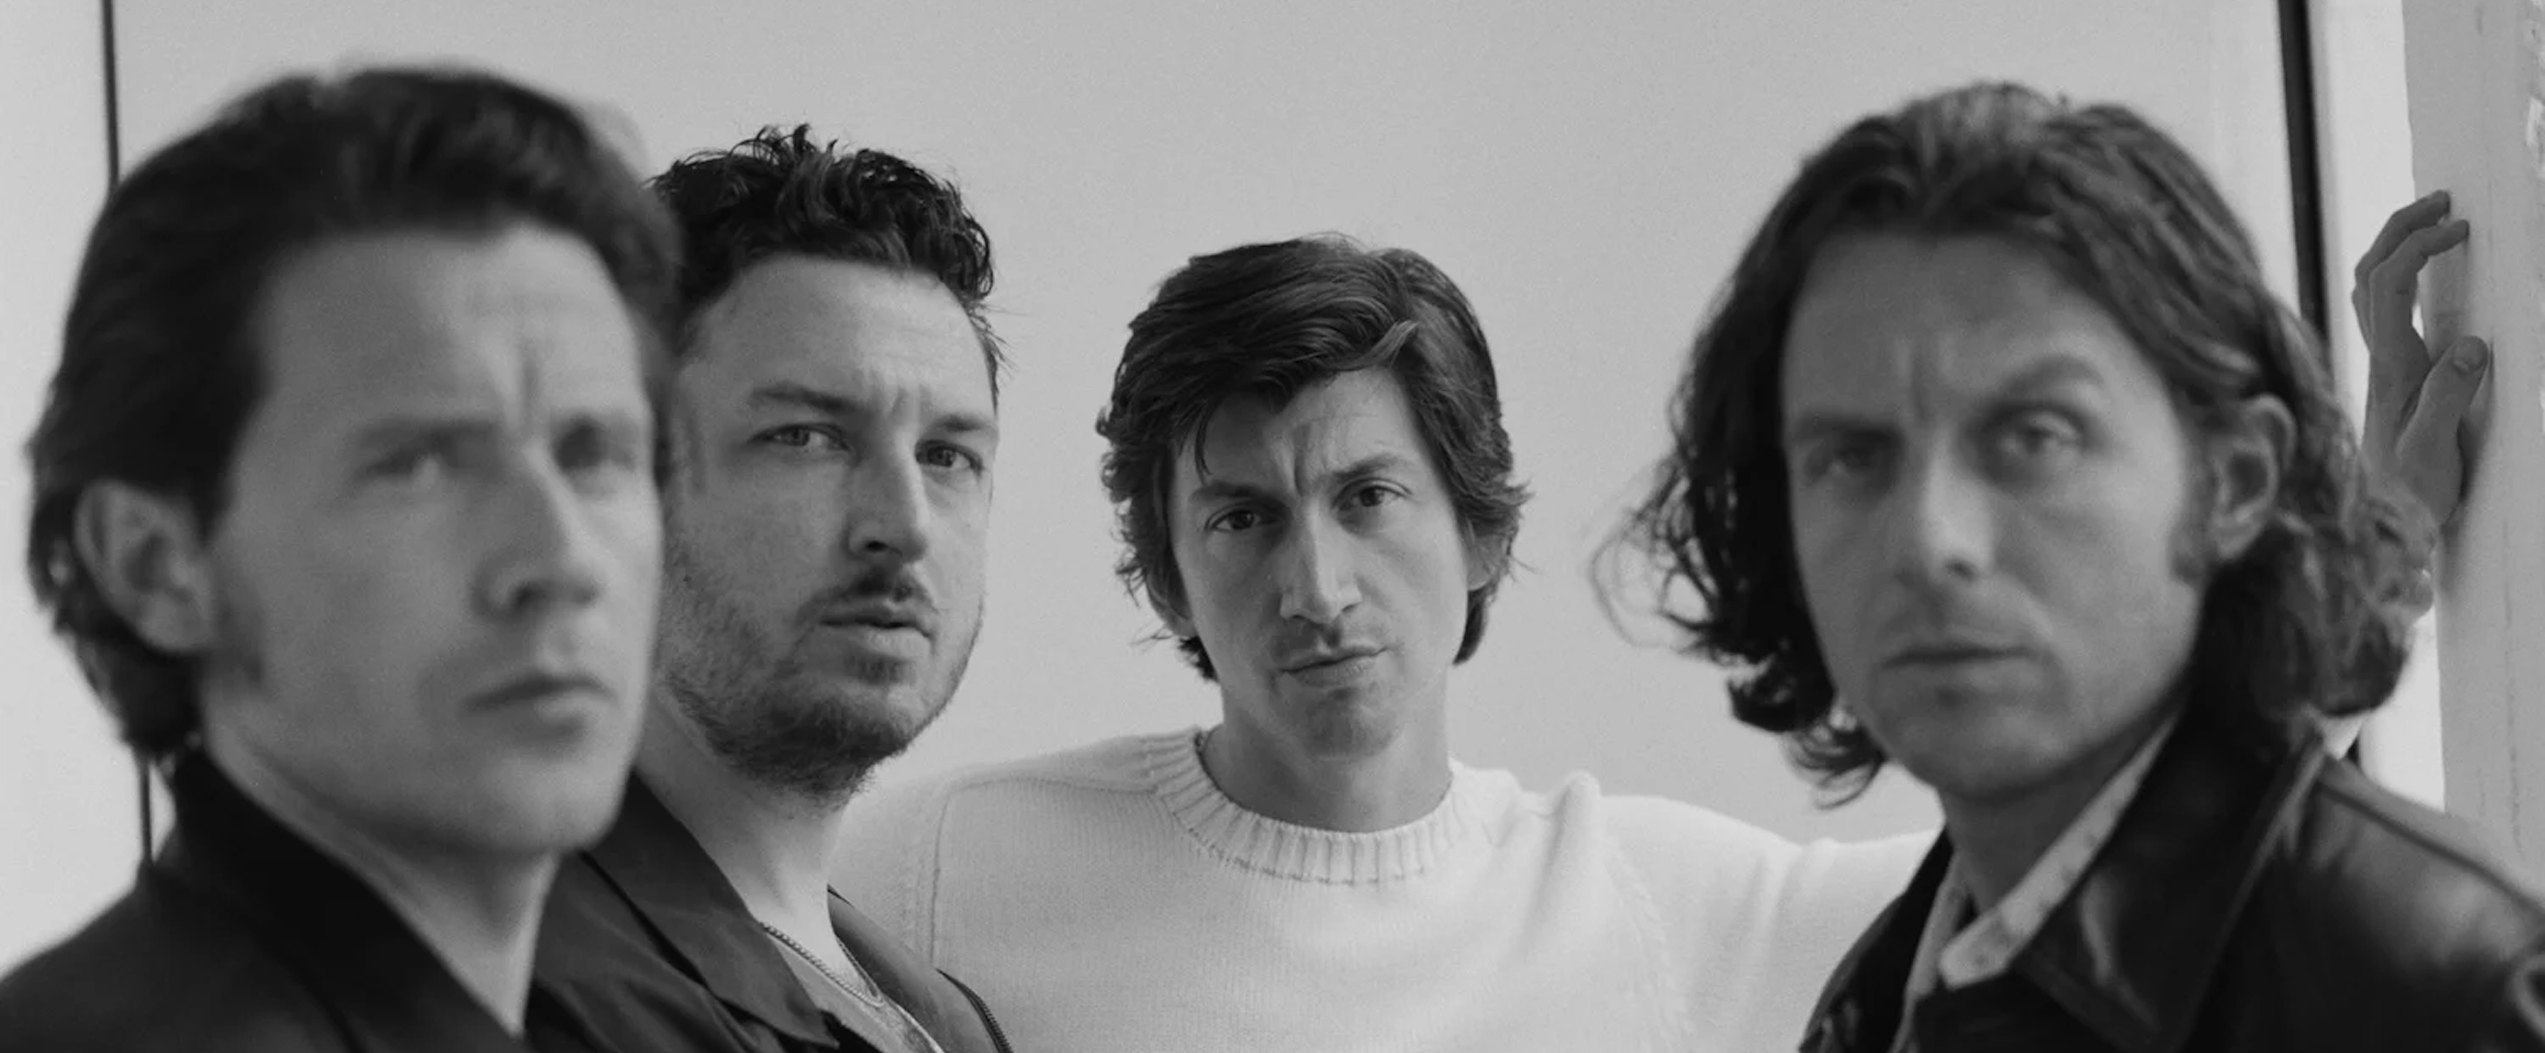 Arctic Monkeys выпустили свой лучший альбом?!